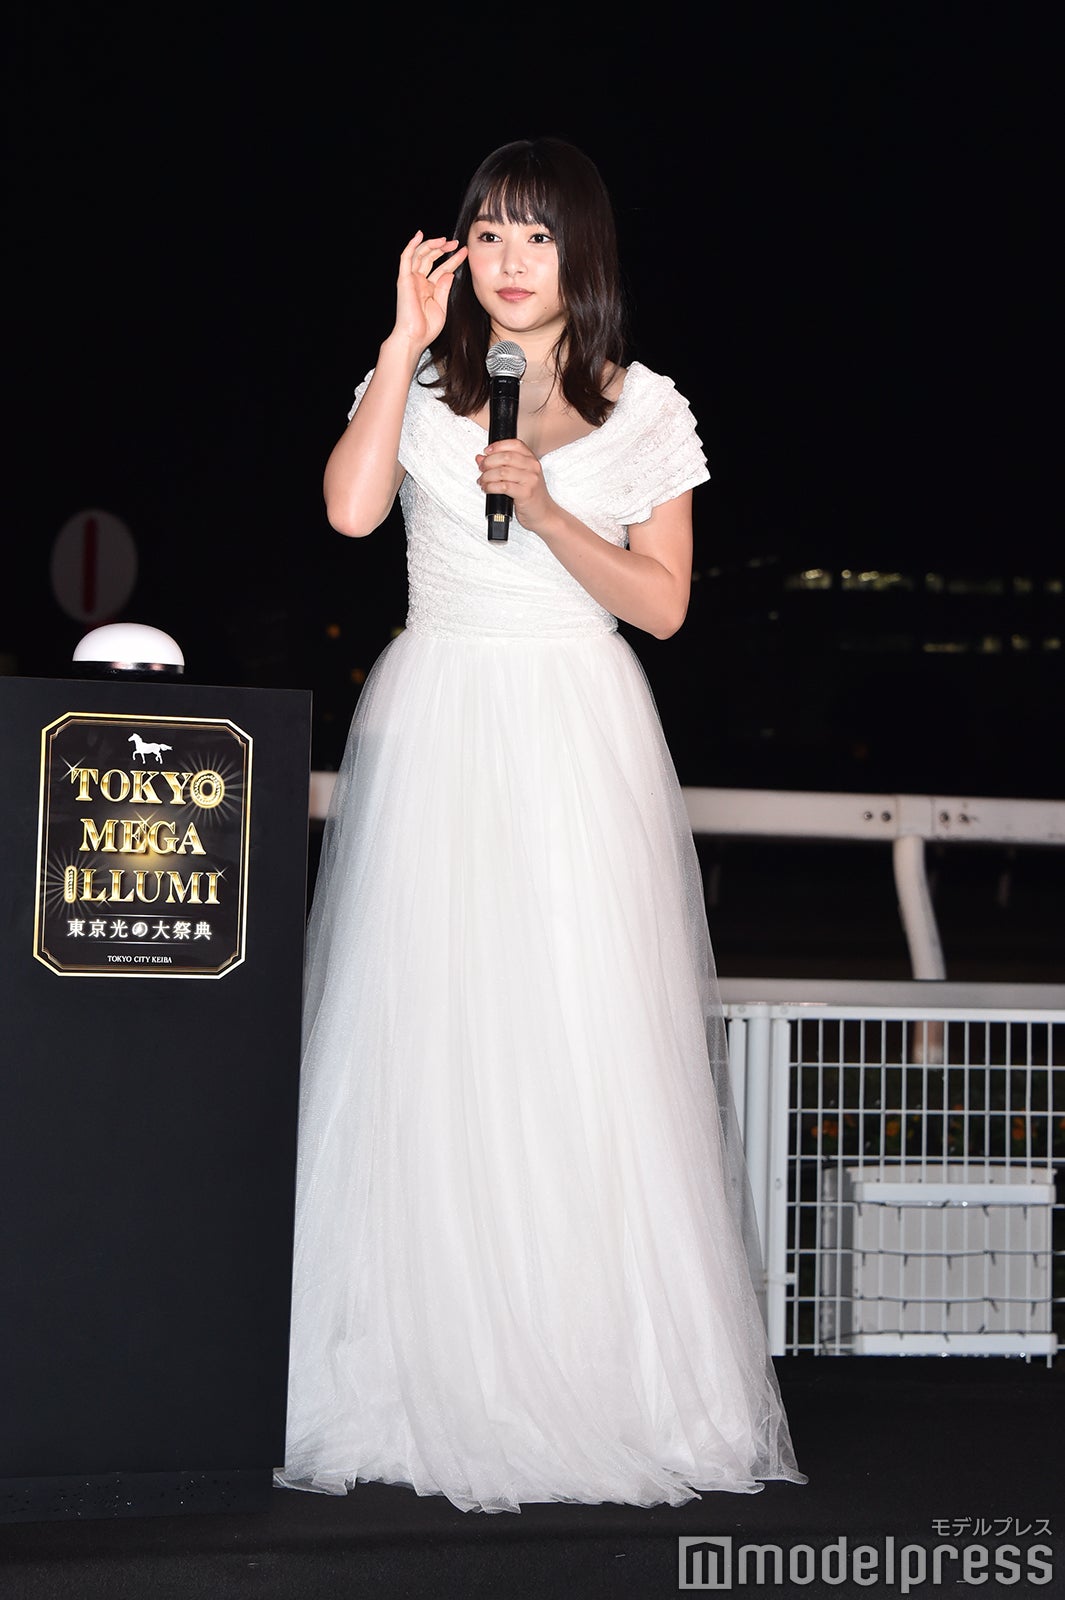 桜井日奈子、胸元ザックリドレスで登場「スリルがありました」 - モデルプレス